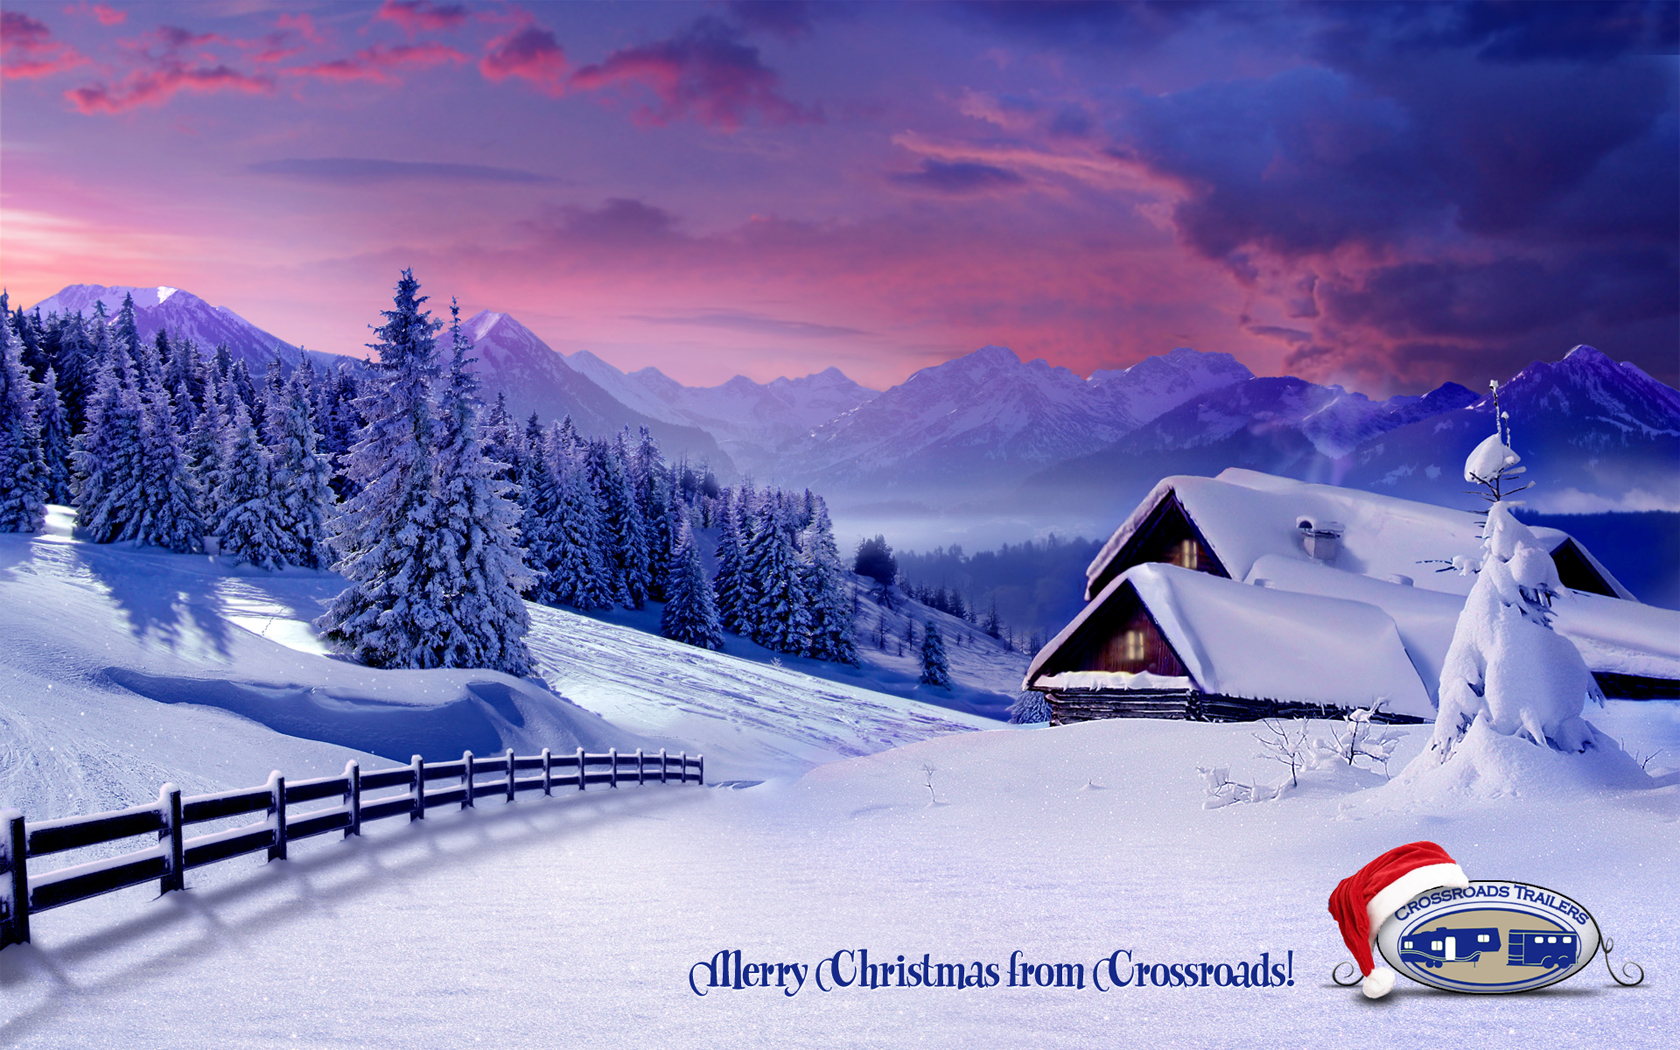 Christmas Desktop Wallpaper From Crossroads Trailers In Newfield Nj